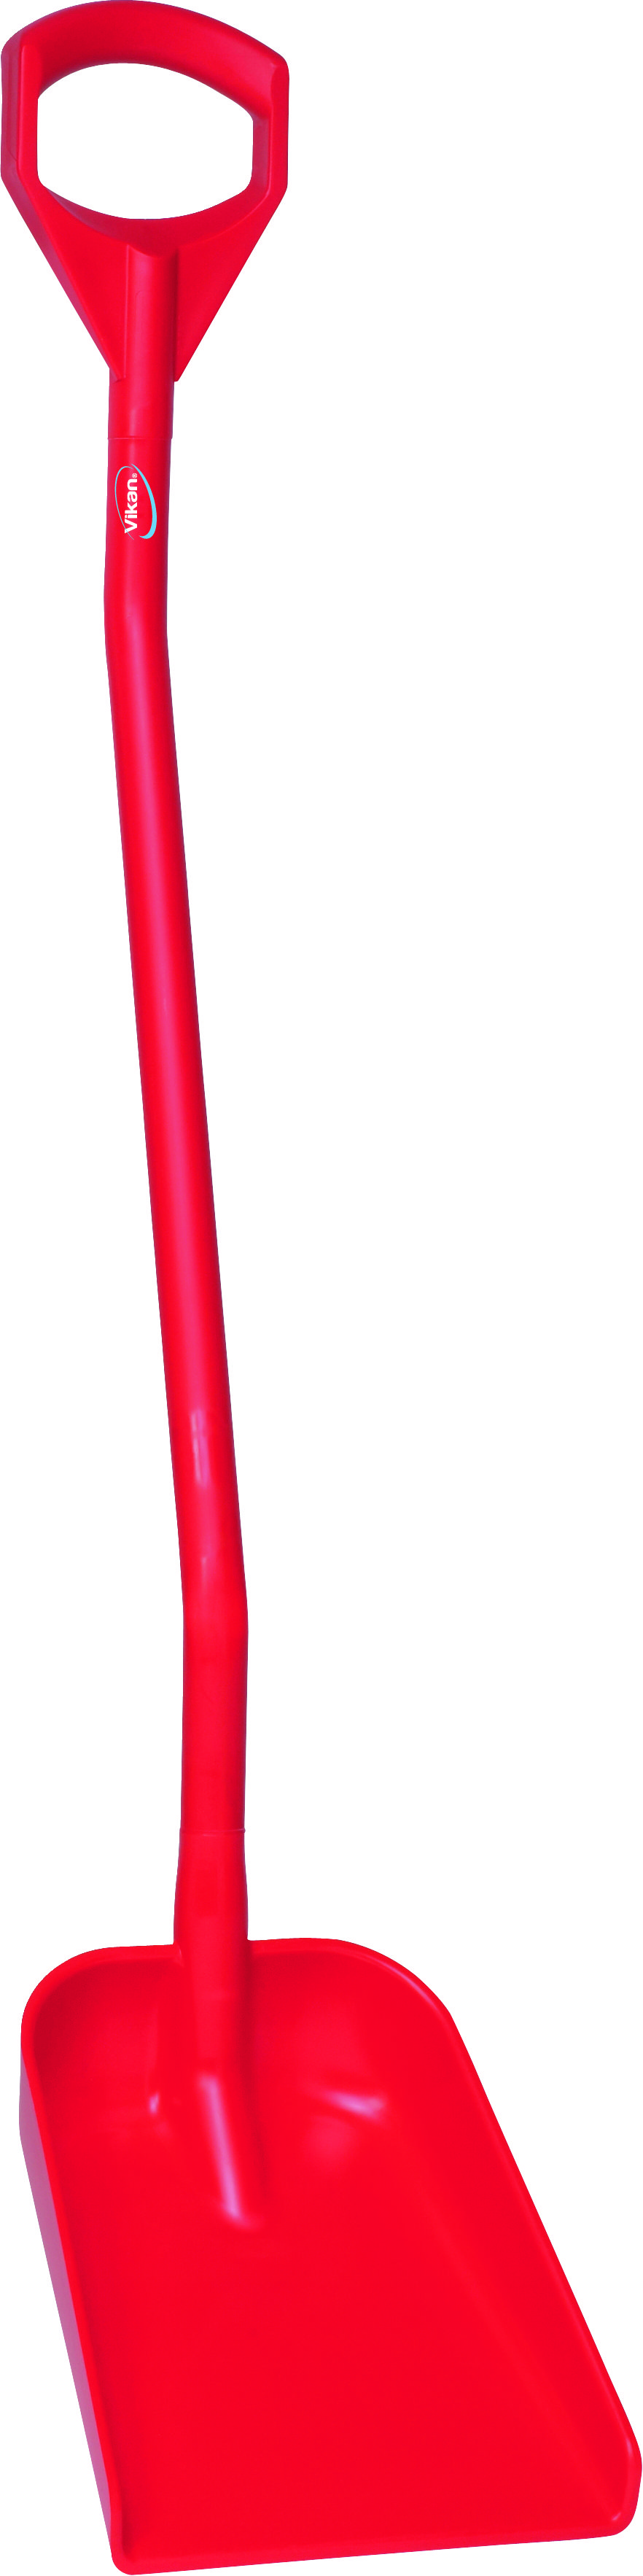 Эргономичная лопата, 340 x 270 x 75 мм., 1280 мм